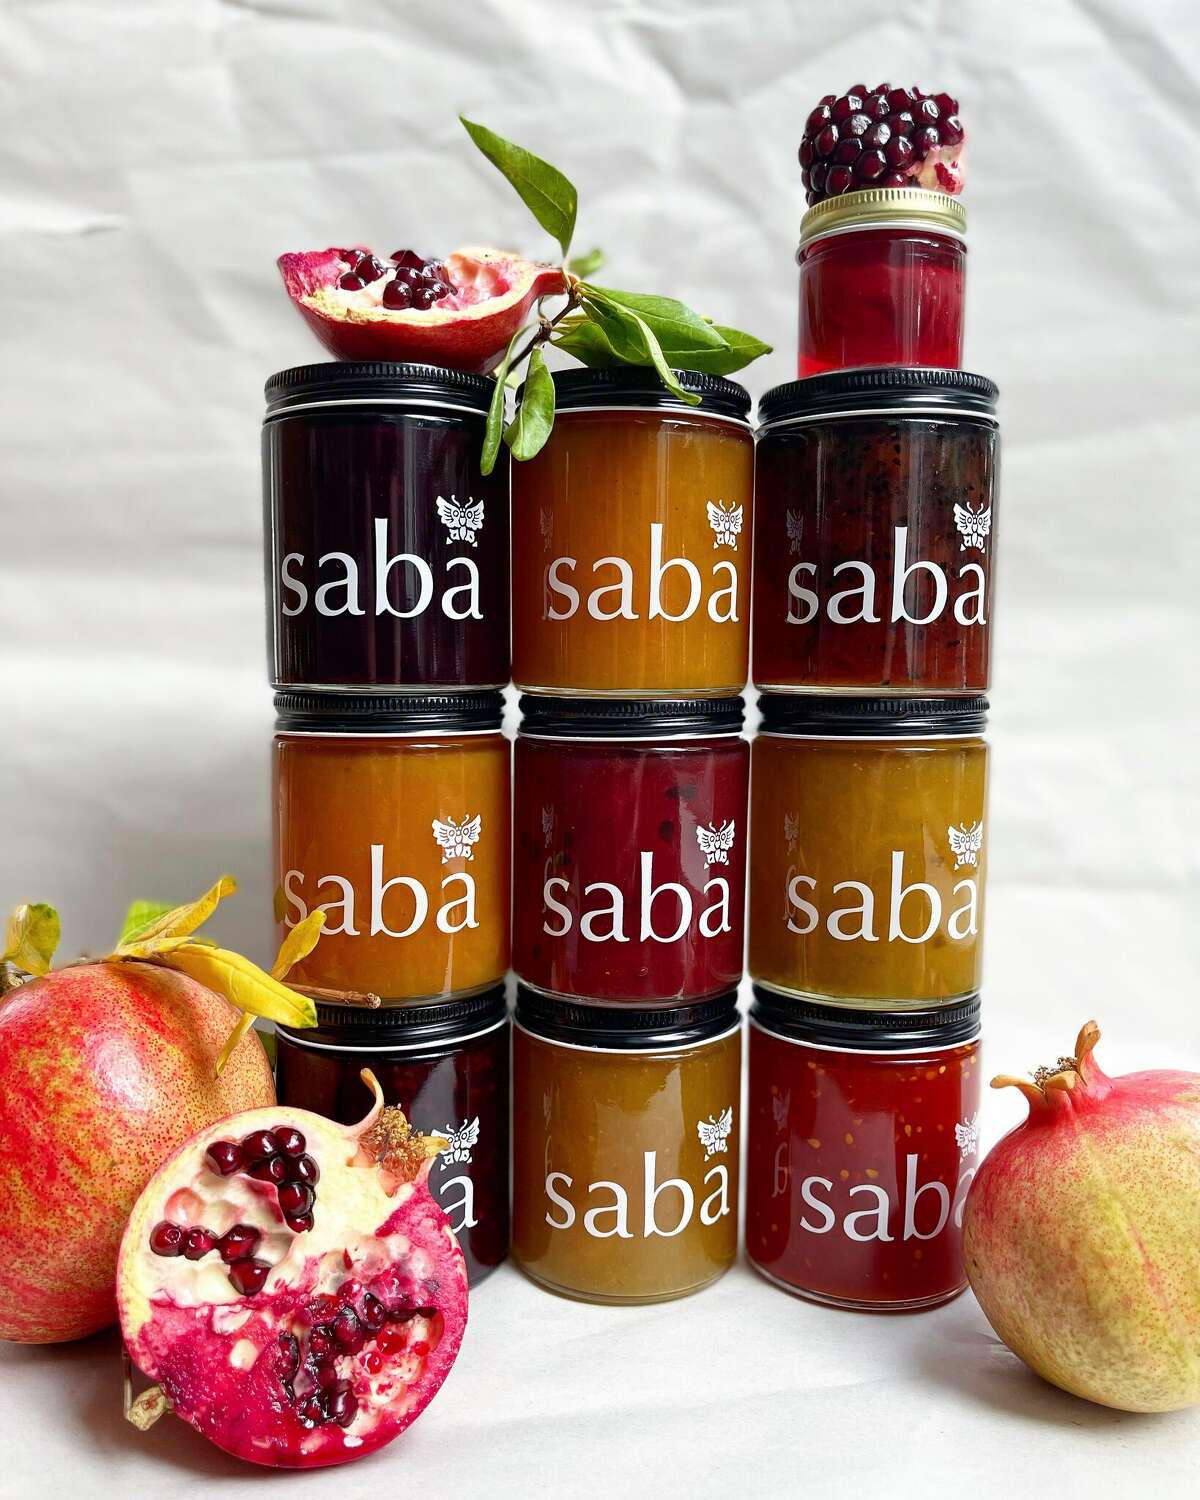 Este es el tercer año de sabā jam reconocida por la organización Good Food Awards por sus conservas en lotes pequeños. 